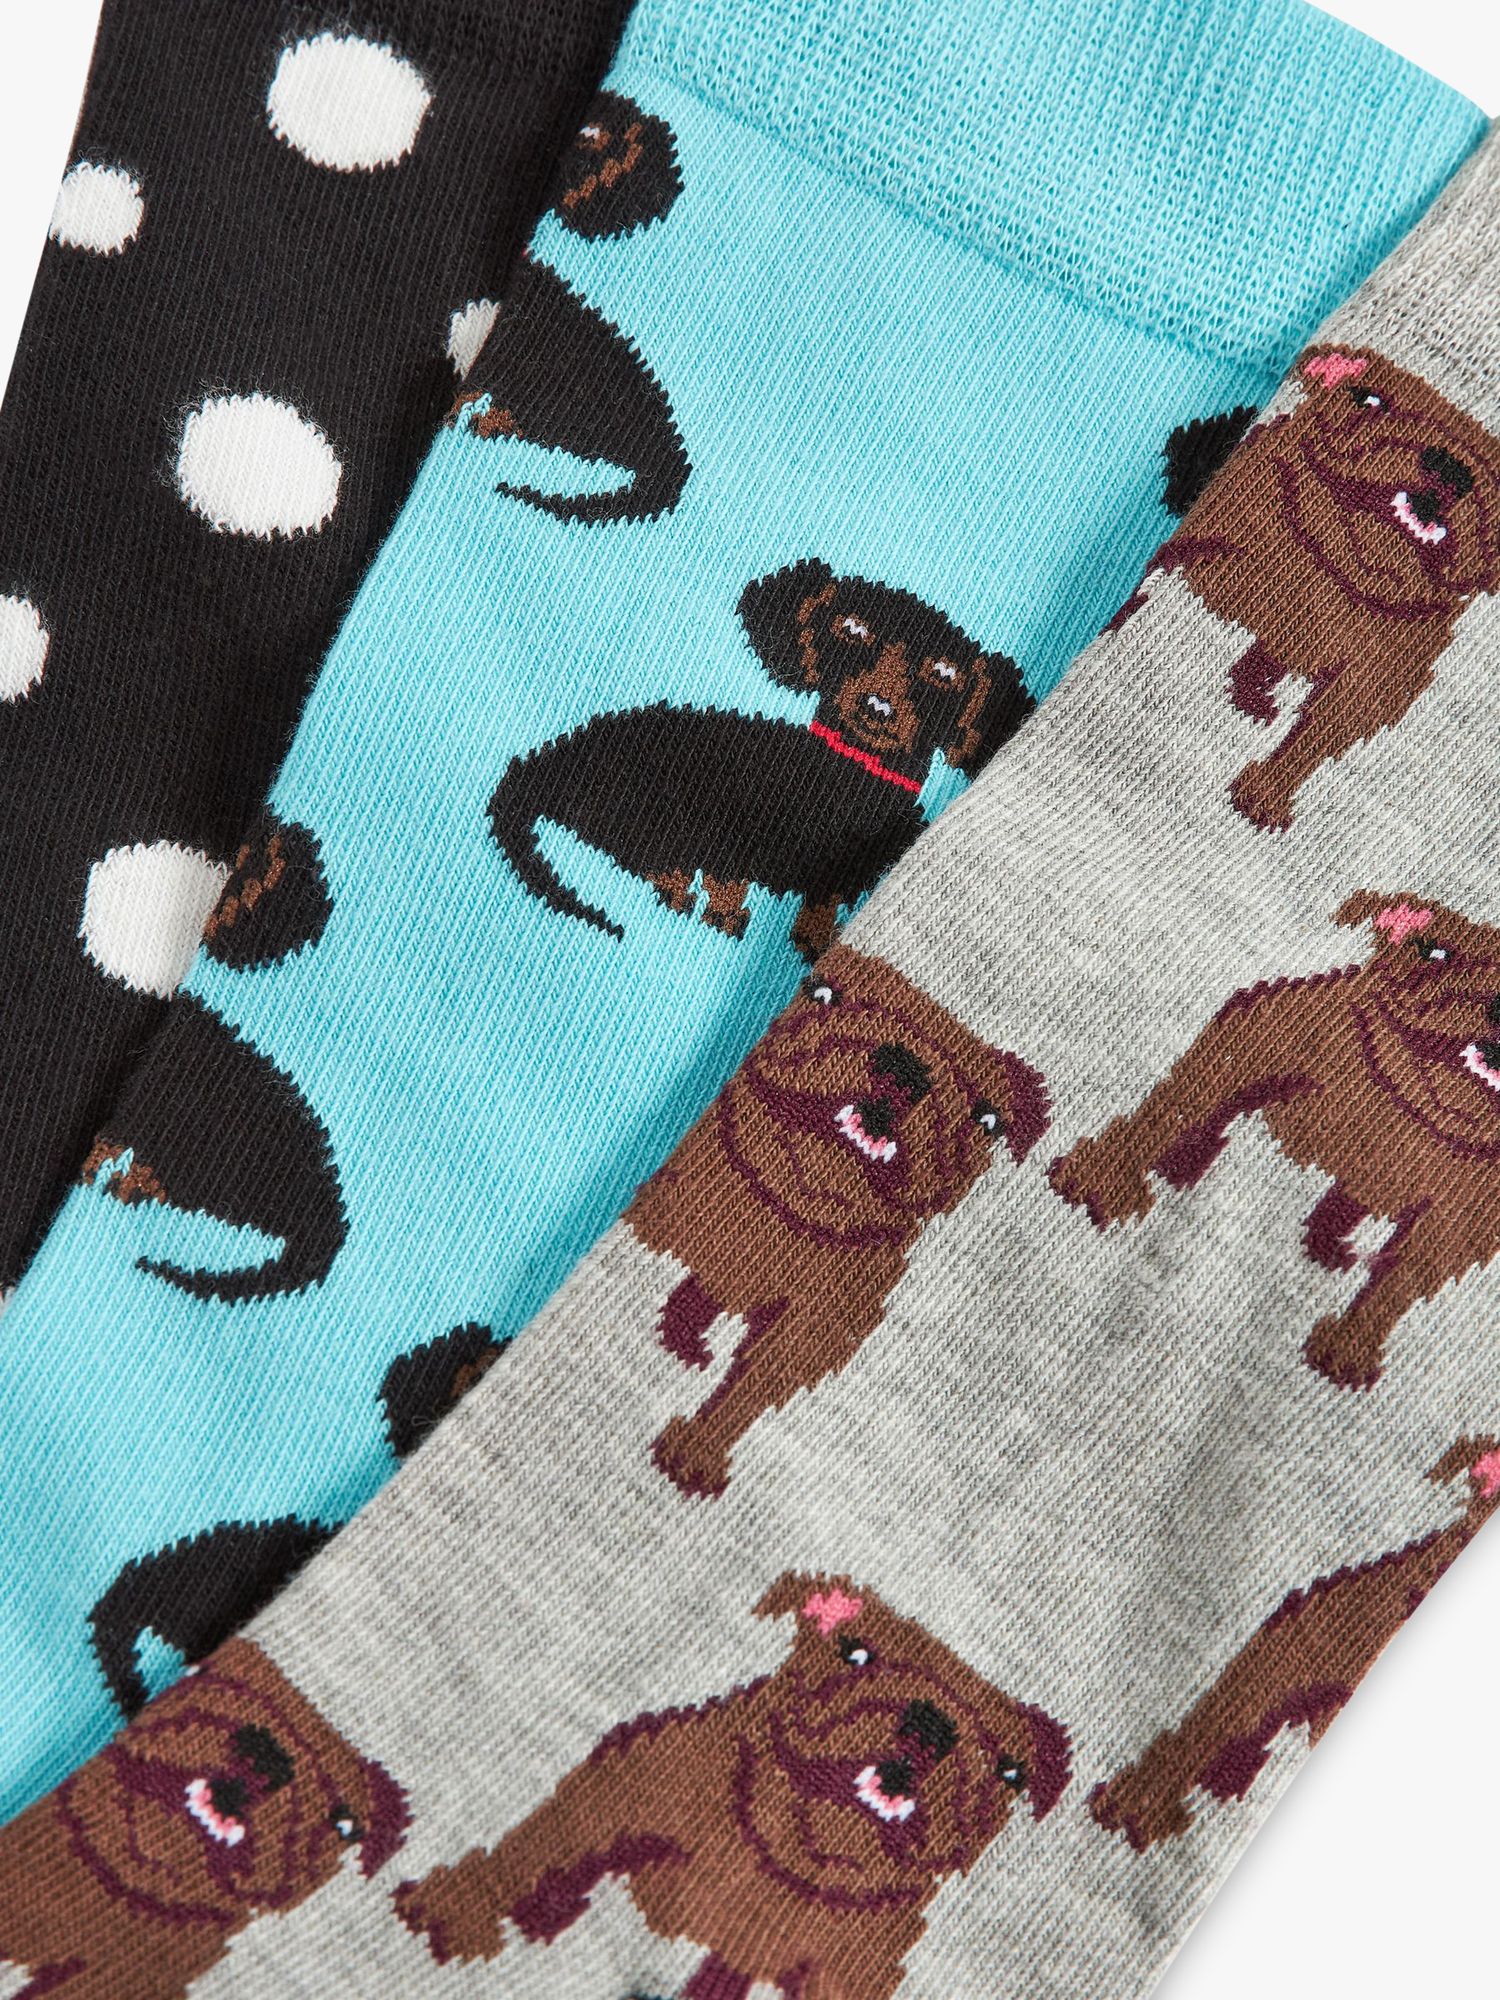 Happy Socks Dog Print Socks, Pack of 3, Multi